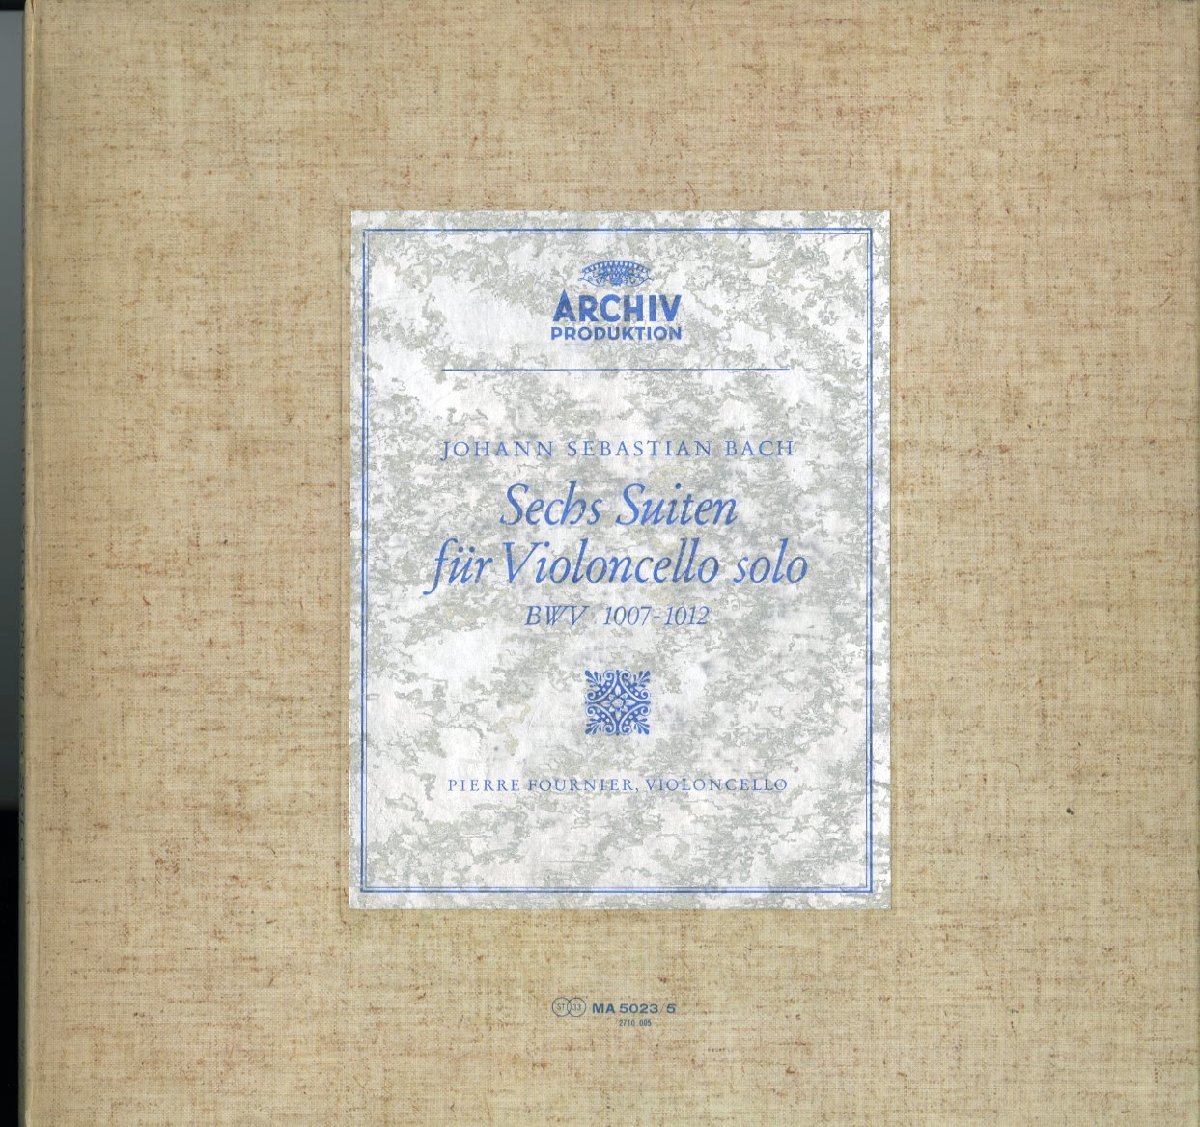 日ARCHIV MA5023/5ピエール・フルニエ バッハ「Sechs Suiten fur Violoncello solo」(3枚組)＊の画像1